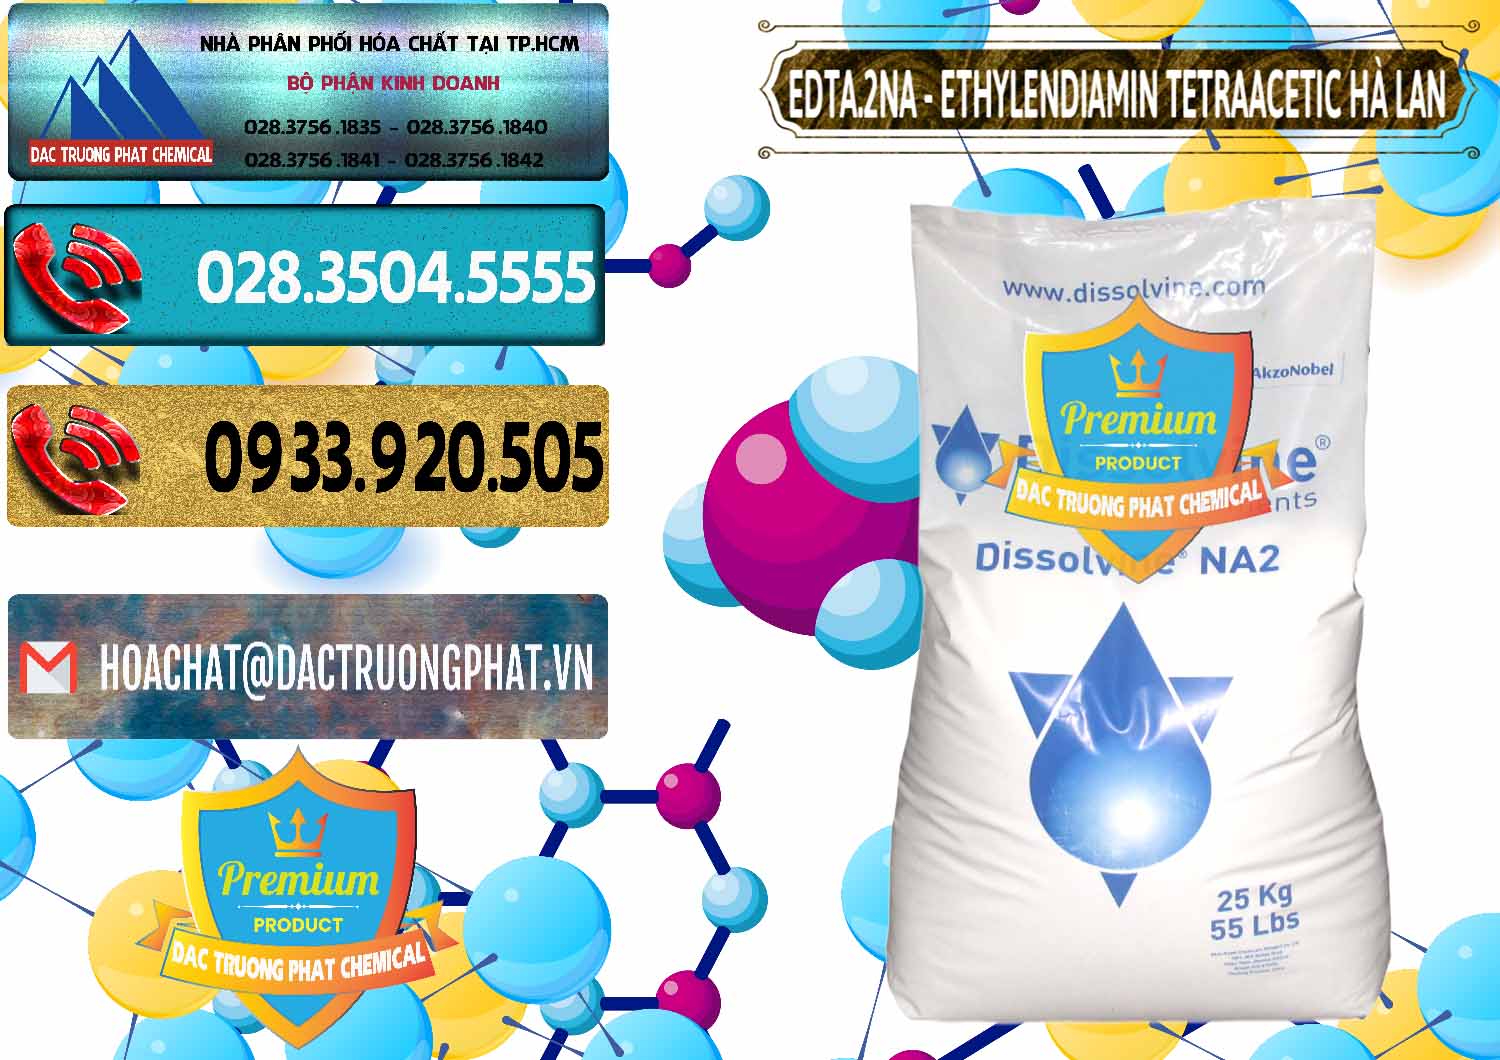 Nơi nhập khẩu và bán EDTA.2NA - Ethylendiamin Tetraacetic Dissolvine Hà Lan Netherlands - 0064 - Cung cấp ( bán ) hóa chất tại TP.HCM - hoachatdetnhuom.com